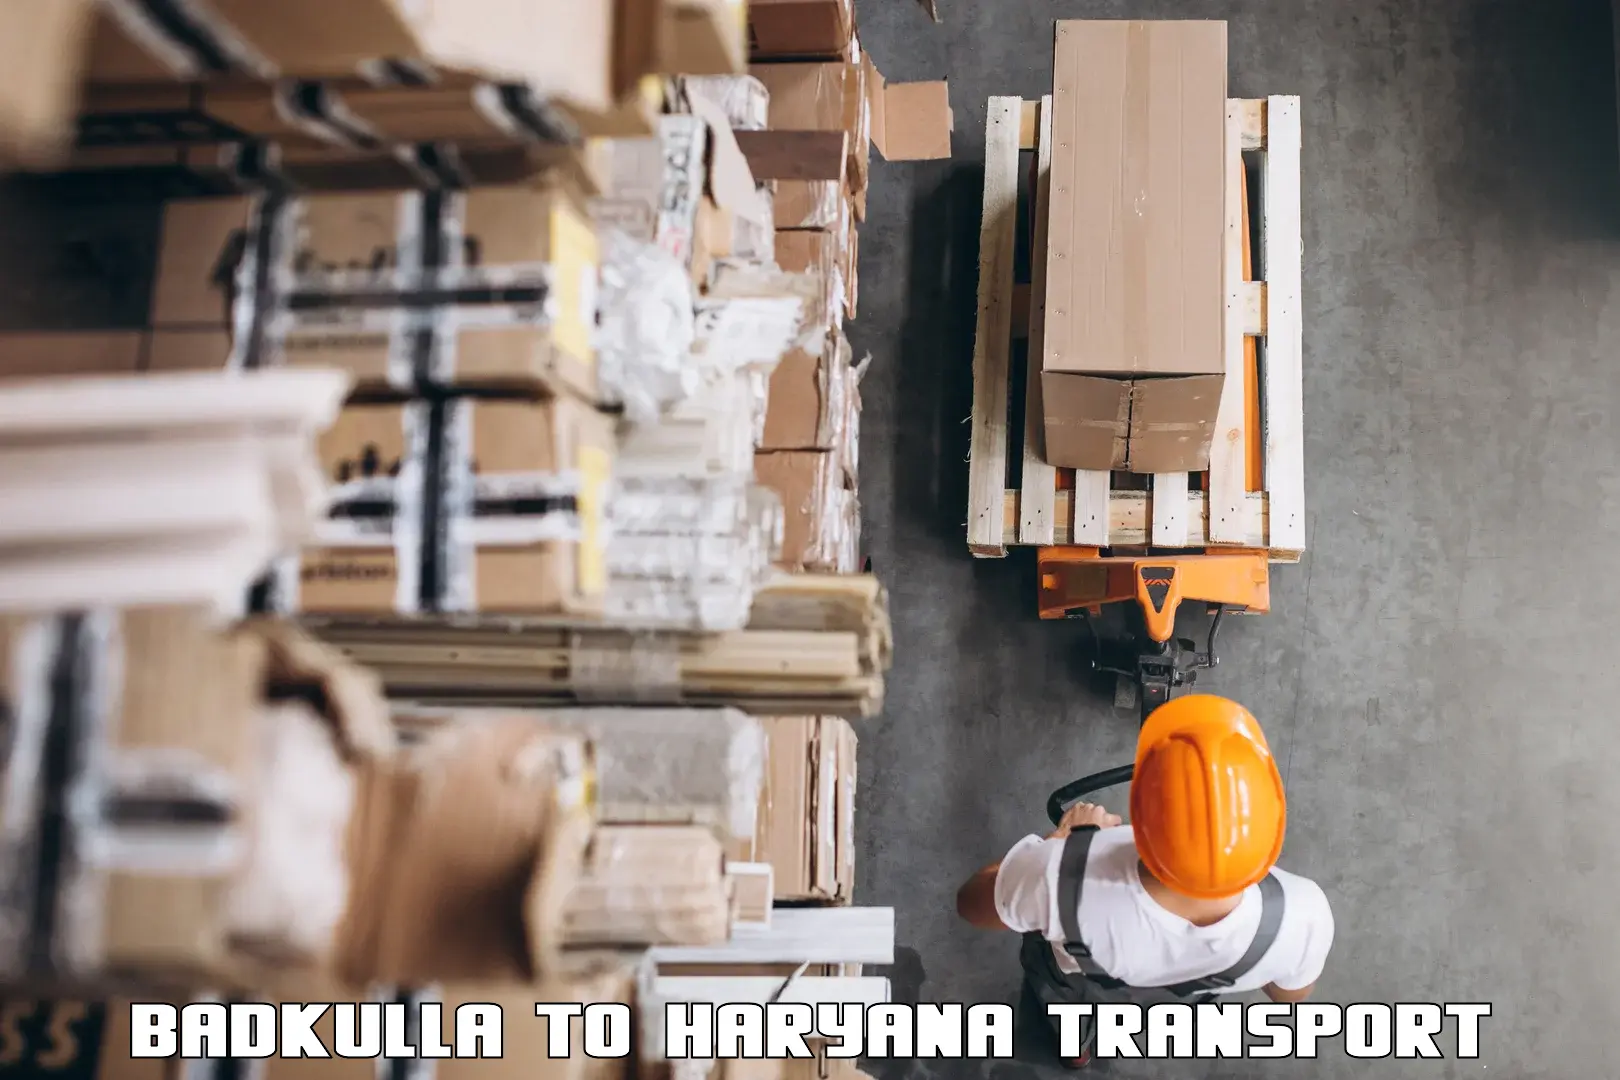 International cargo transportation services Badkulla to Buguda